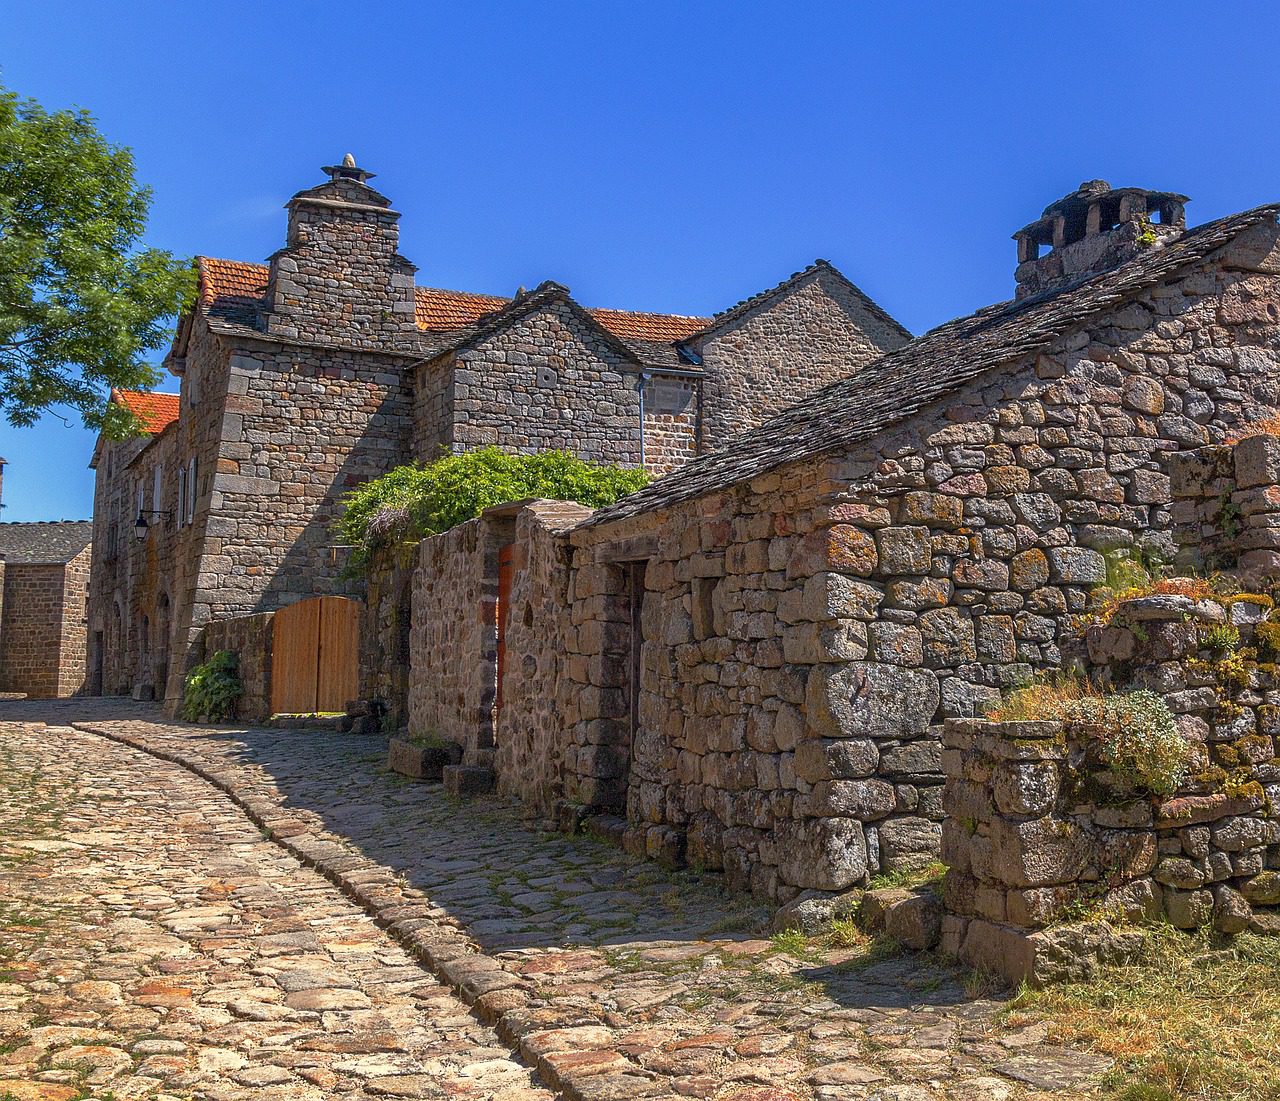 Bâtisses de pierre sèche en Lozère, dans le Parc national des Cévennes, photographie de Gabriel_de_siam de Pixabay